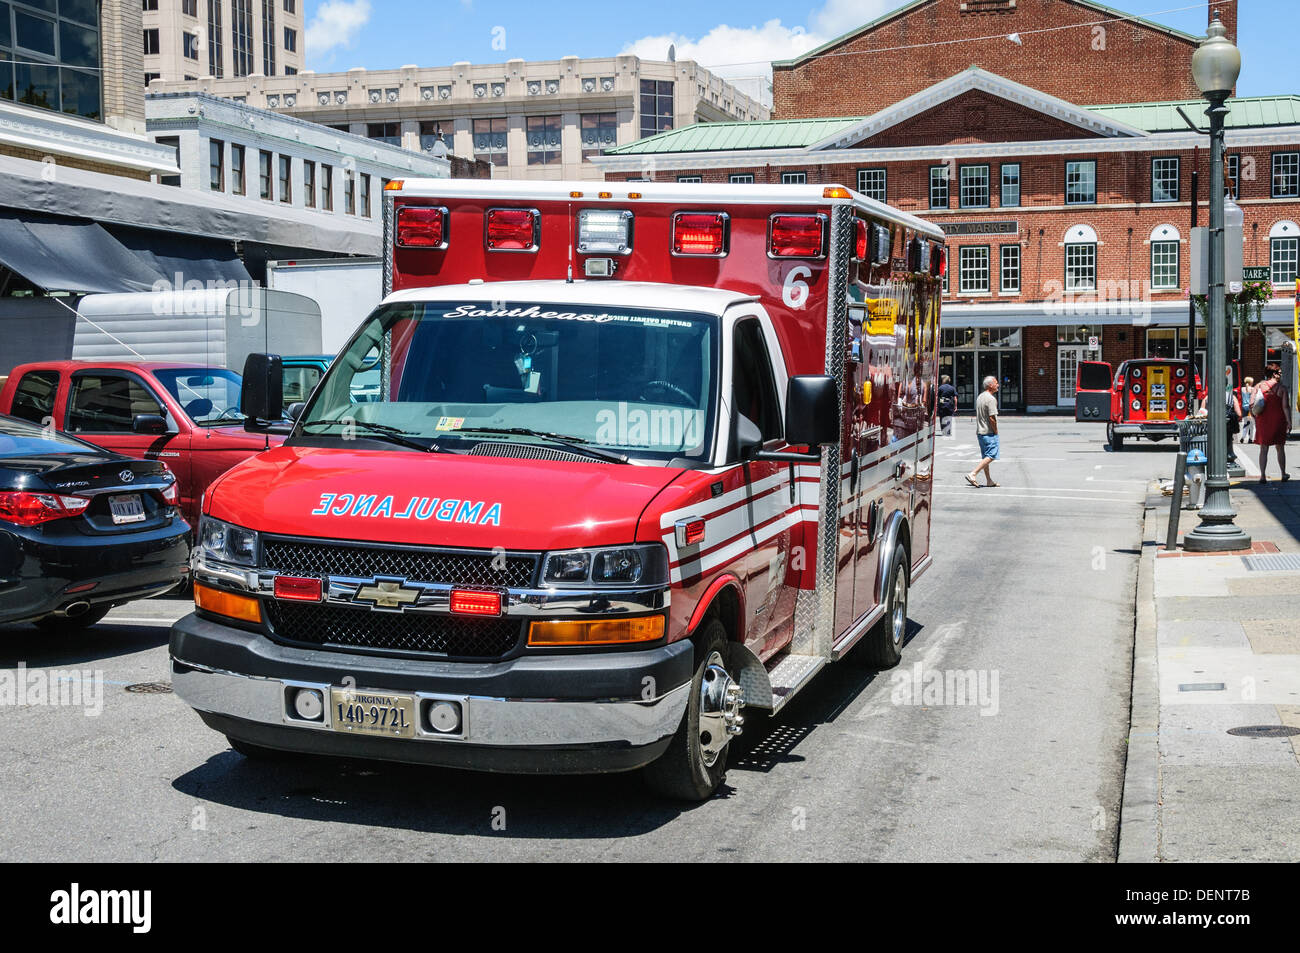 Ambulance répondant à un appel d'urgence, rue Market, Roanoke, Virginie Banque D'Images